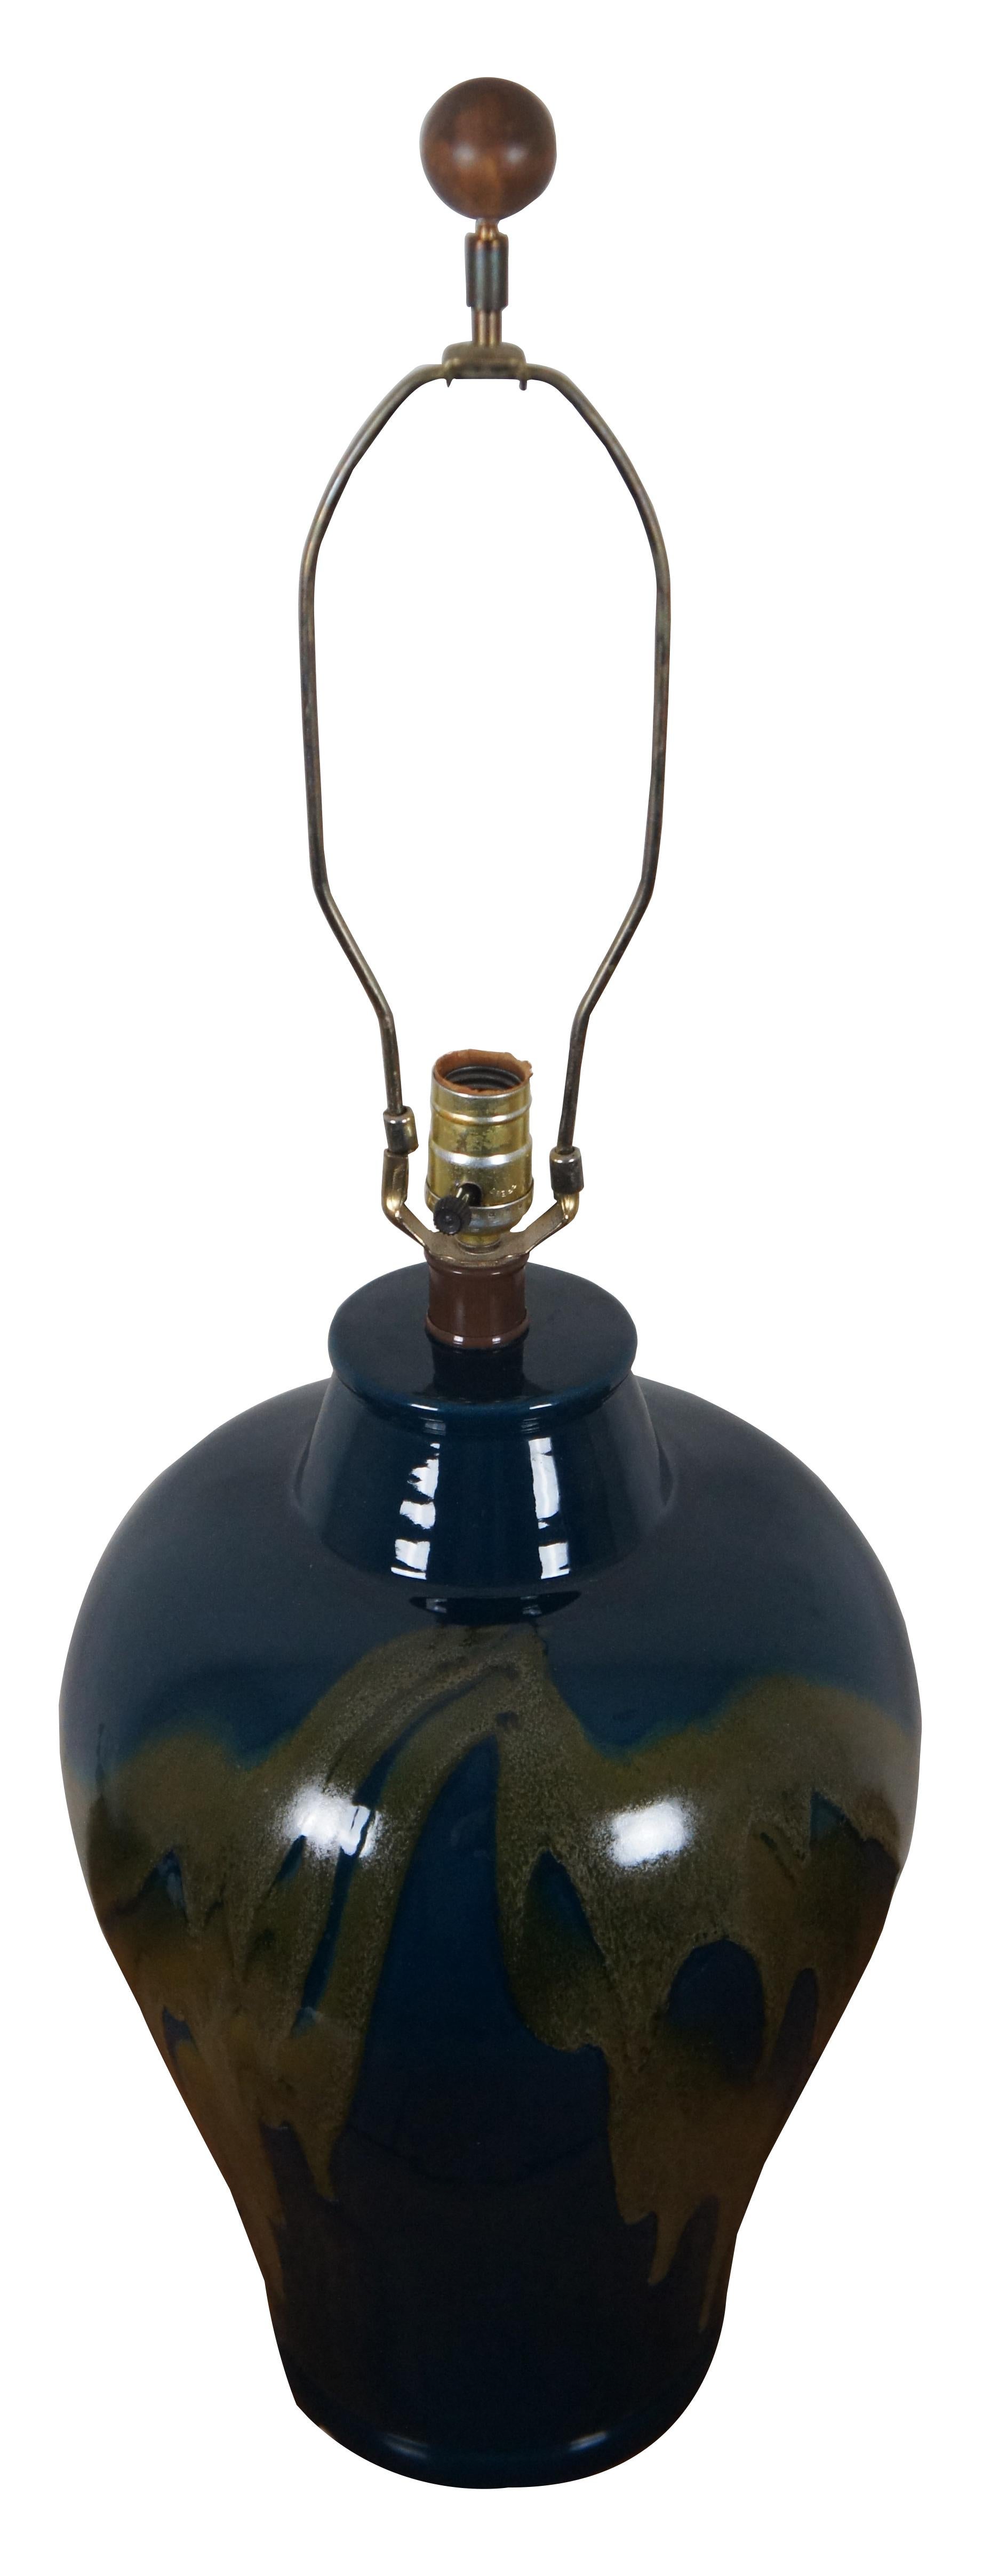 Vintage-Tischlampe in Form eines Ingwerglases mit olivgrüner Tropfglasur auf tiefem Blau.

Maße: 12